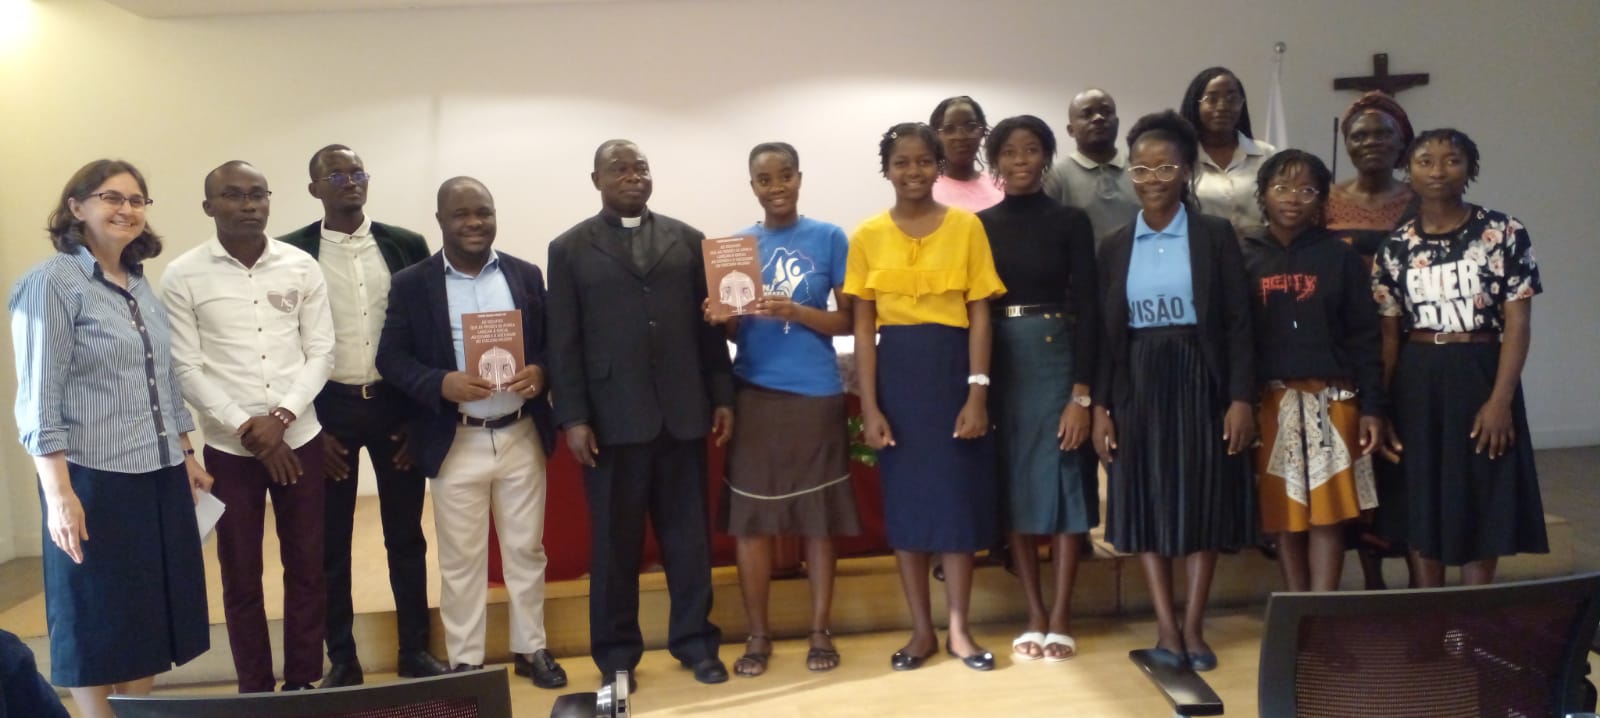 Irmãs Paulinas recebem livro de Clément Mulewu Munuma Yôk